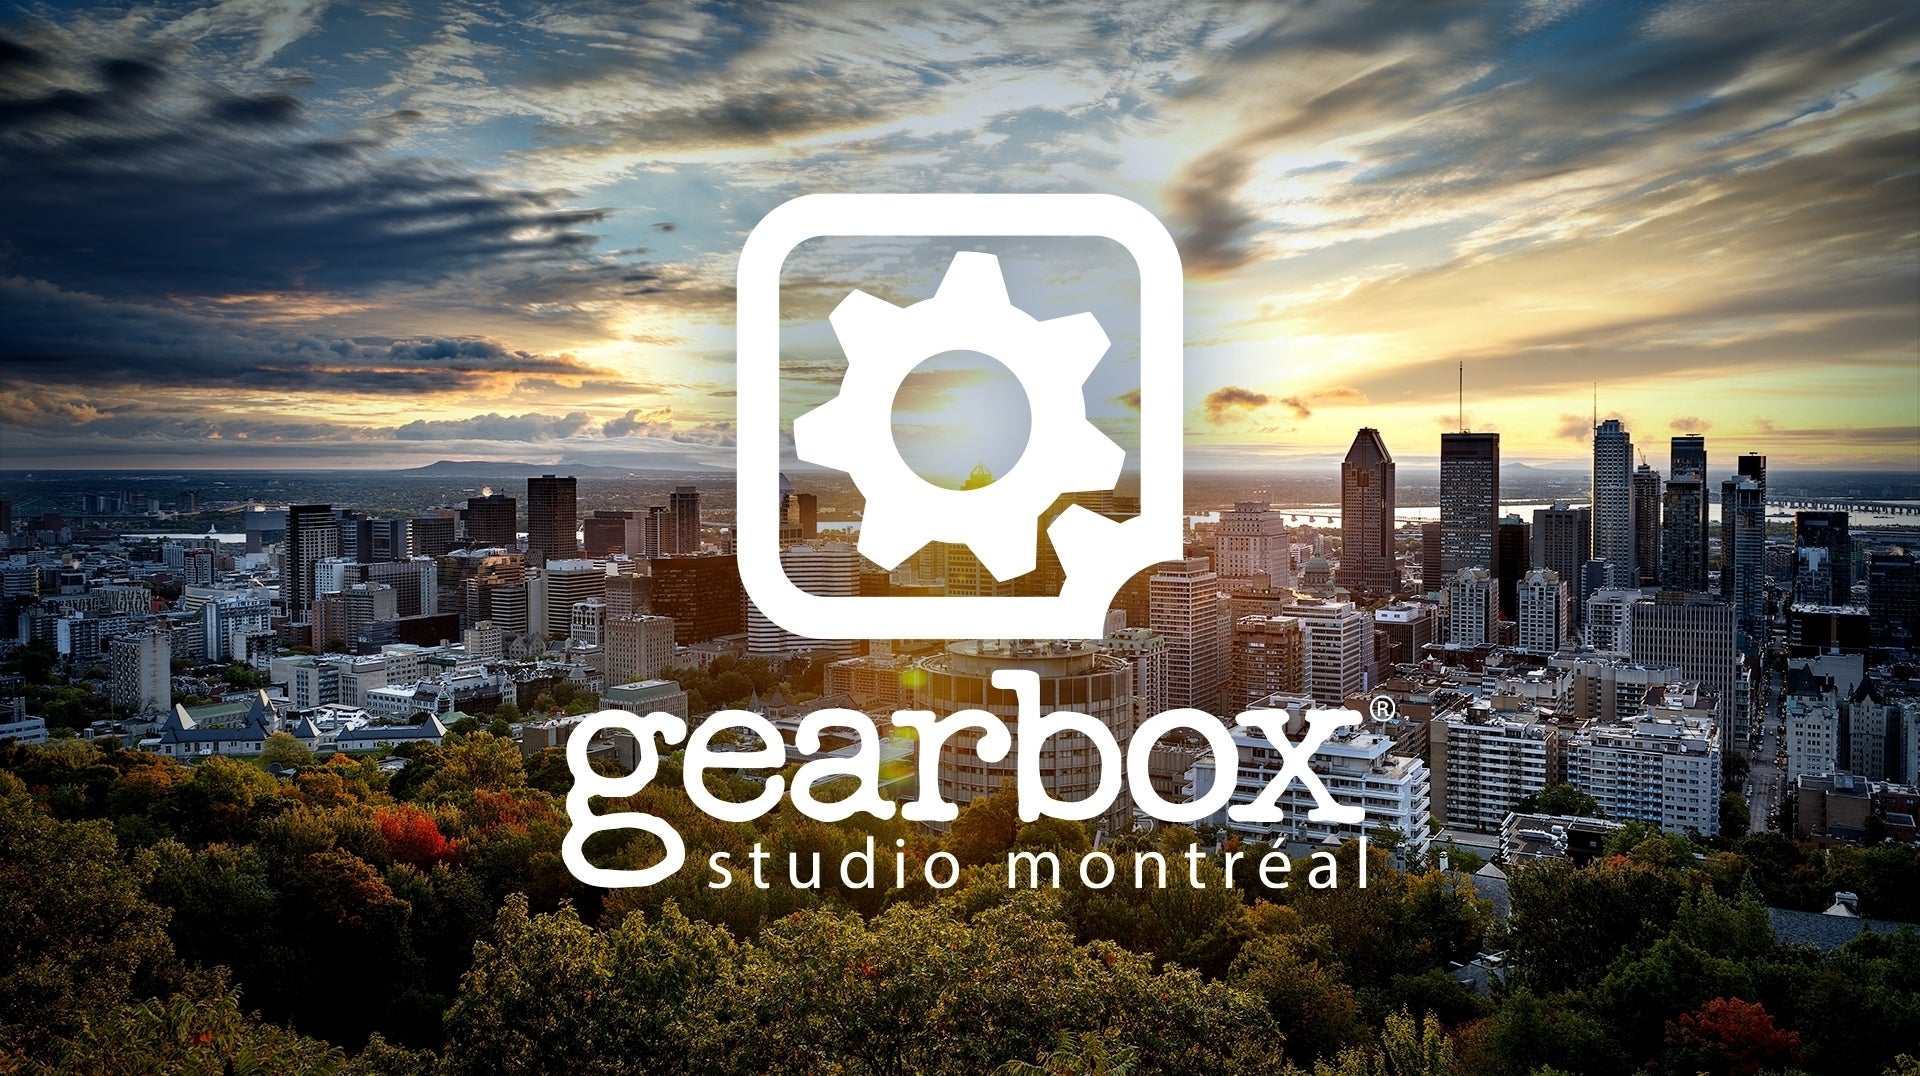 Imagen para Gearbox abre un nuevo estudio en Montreal